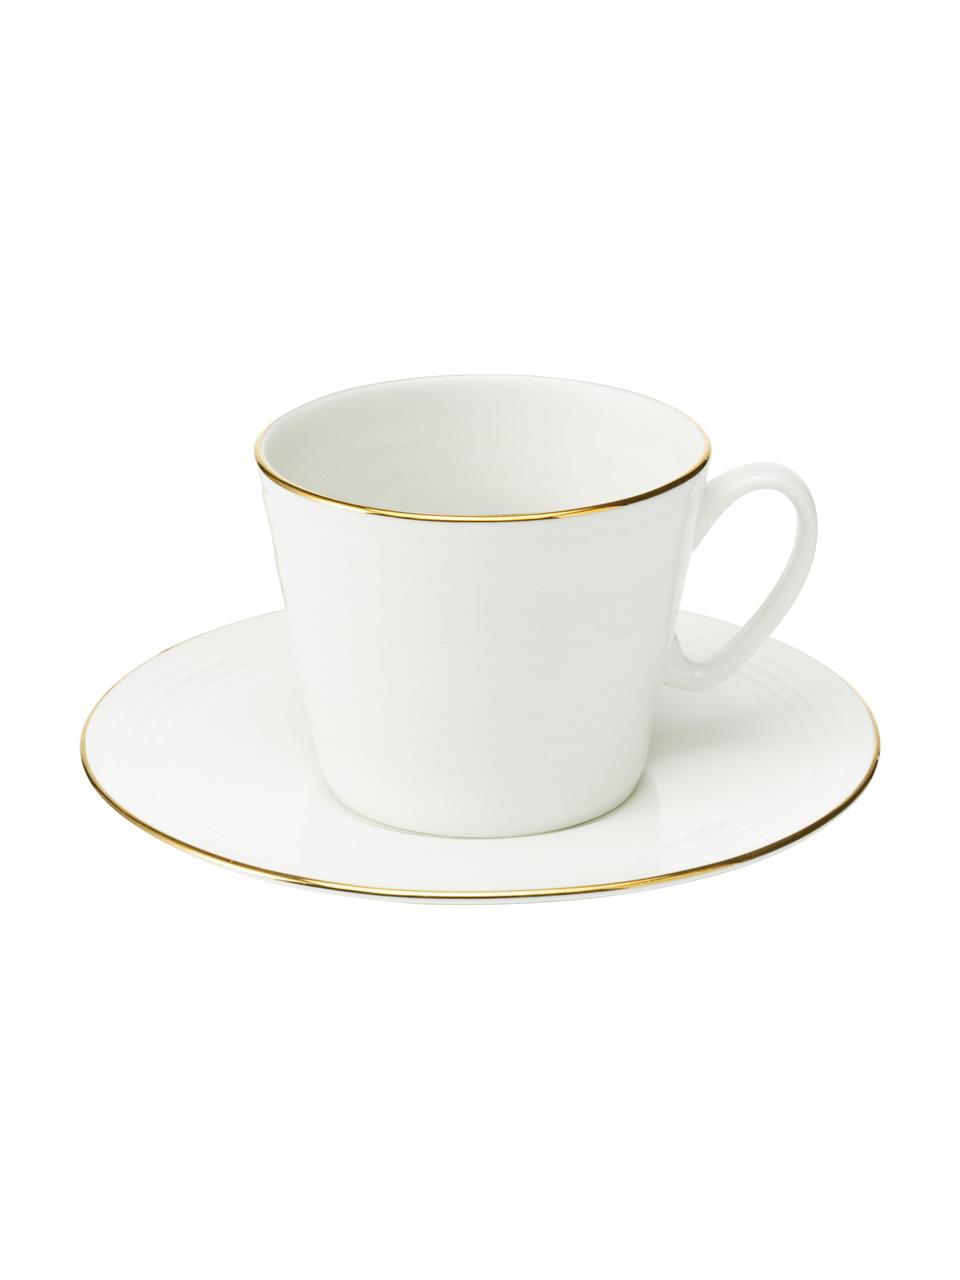 Koffiekopjes Cobald, 4 stuks, Porselein, Wit, goudkleurig, Ø 9 x H 8 cm